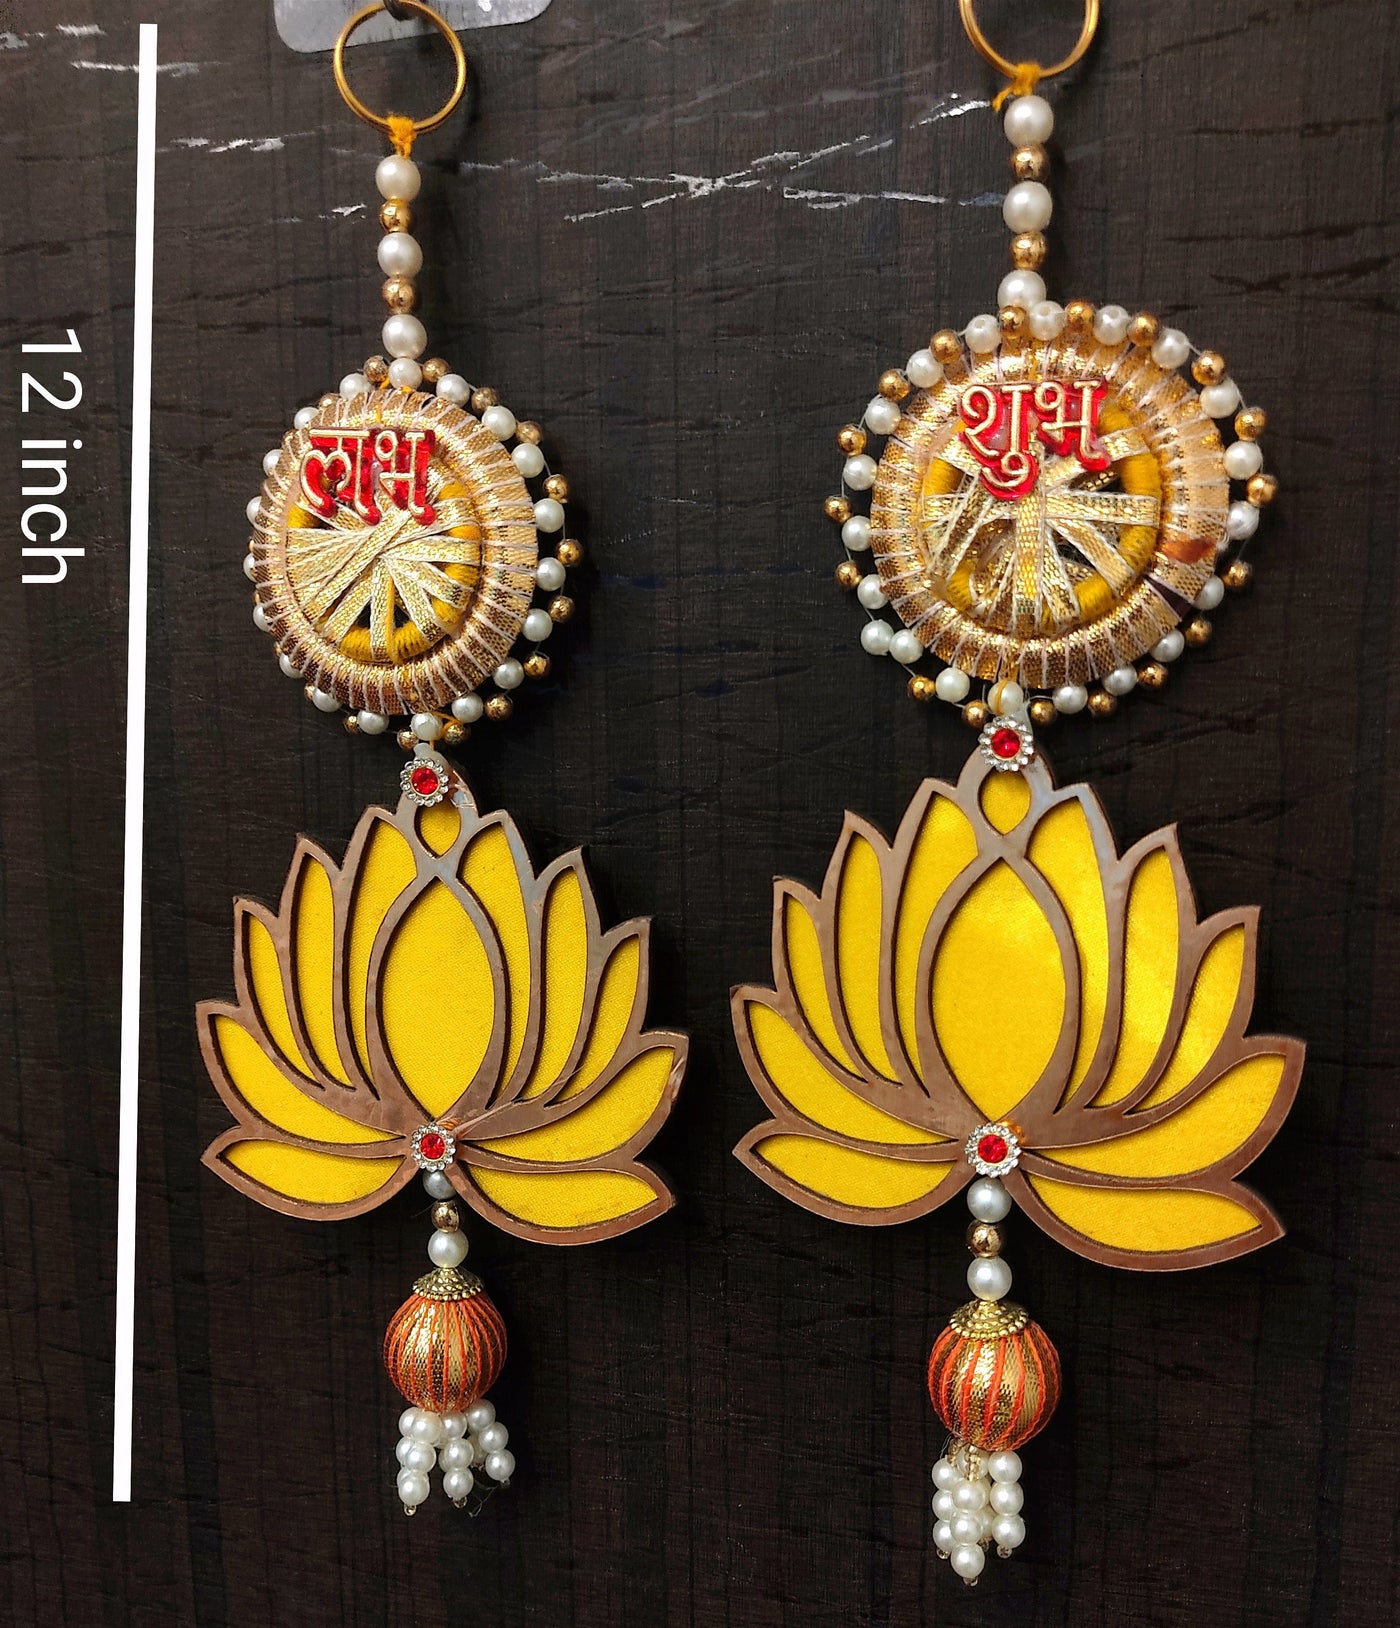 Lamansh shubh labh LAMANSH Yellow Decorative Shubh Labh 🕉️ Lotus hangings for Puja Return Gifts | Festival decor in Diwali & Navratri